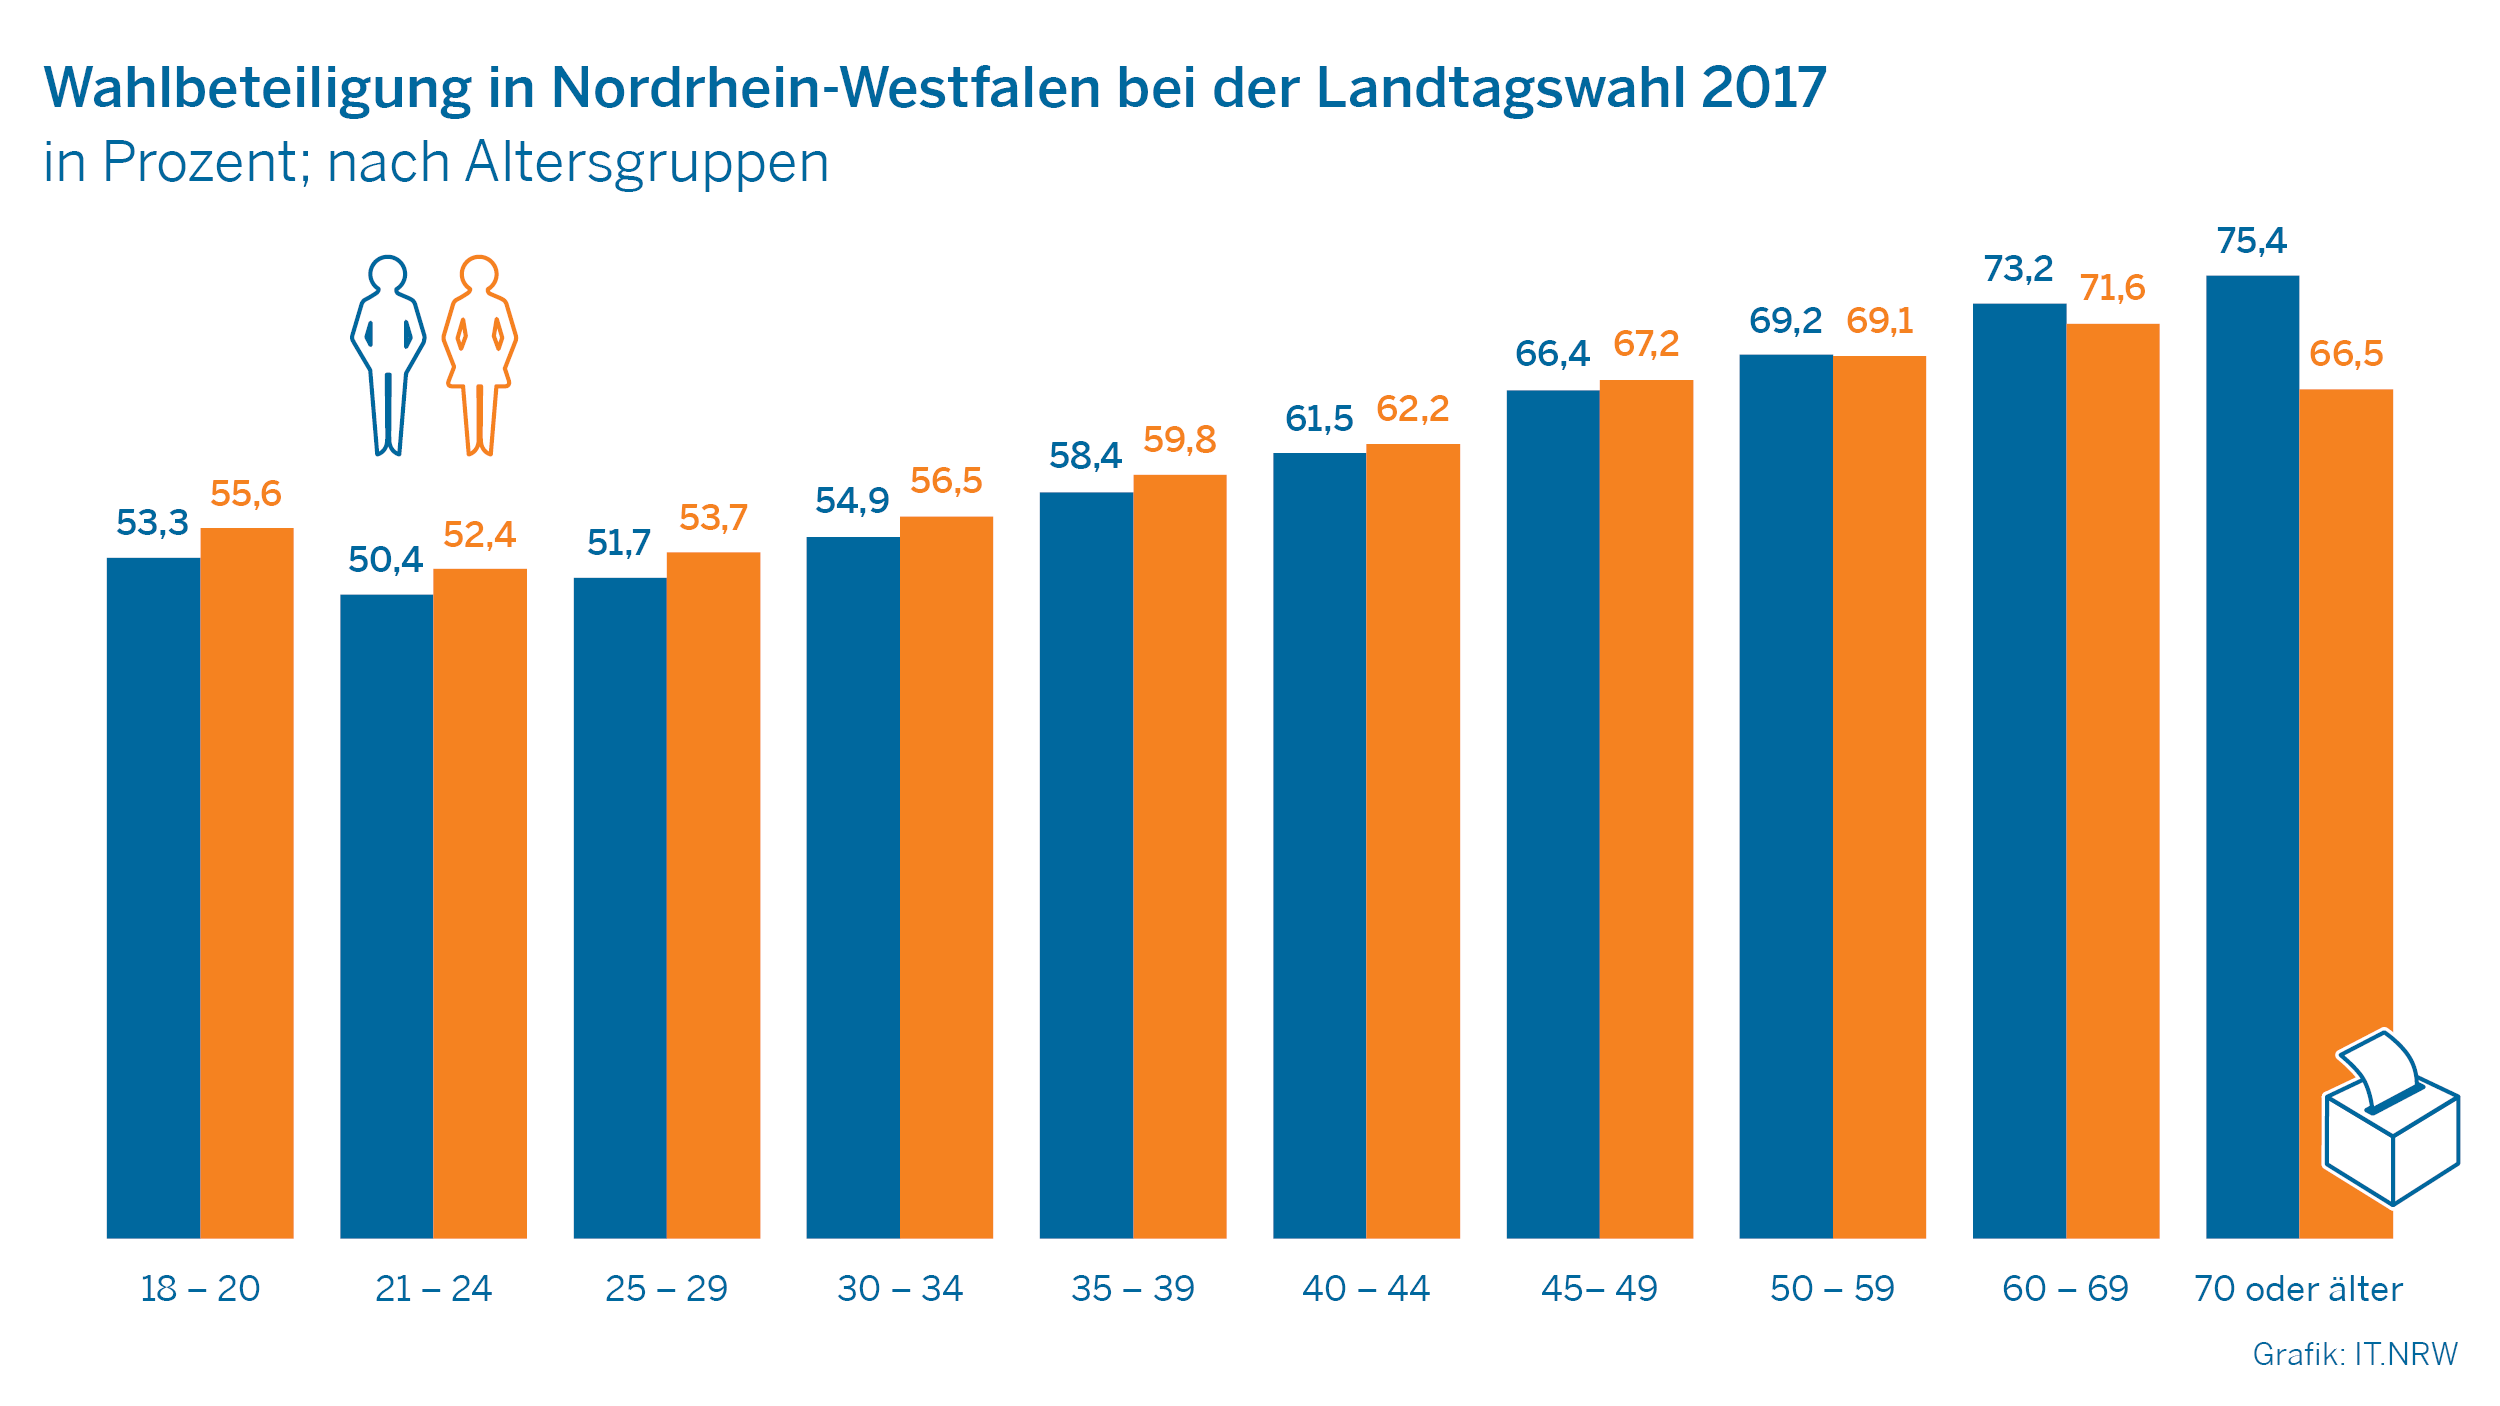 Wahlbeteiligung in Nordrhein-Westfalen bei der Landtagswahl 2017